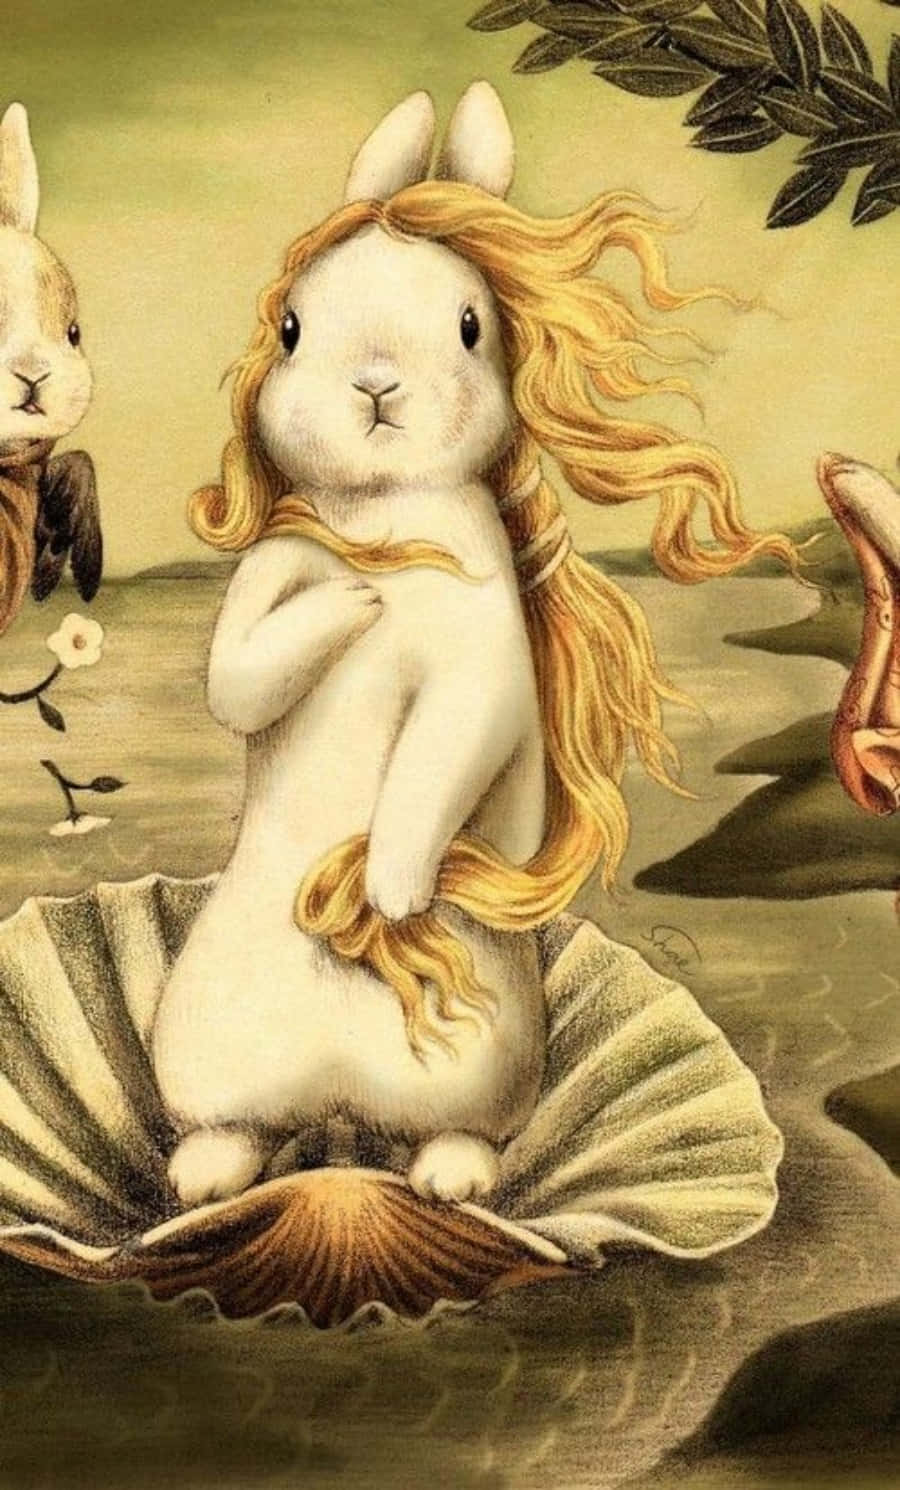 Immaginedivertente Di Un Coniglietto, Riproduzione Del Dipinto Nascita Di Venere